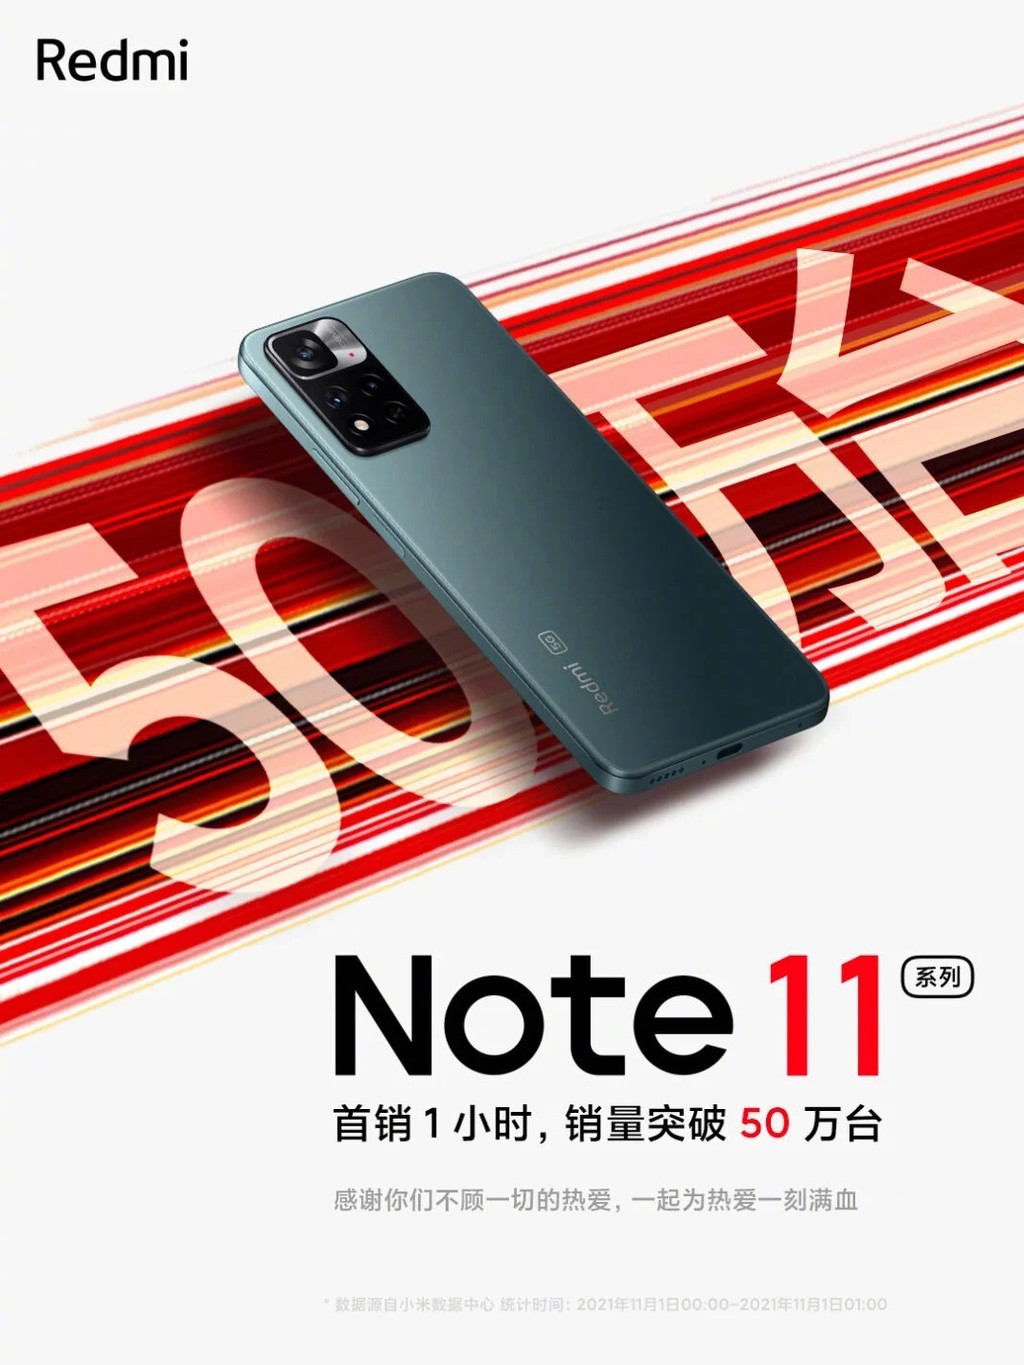 Redmi Note 11 đã bay 500.000 chiếc chỉ trong 1 giờ mở bán ảnh 2